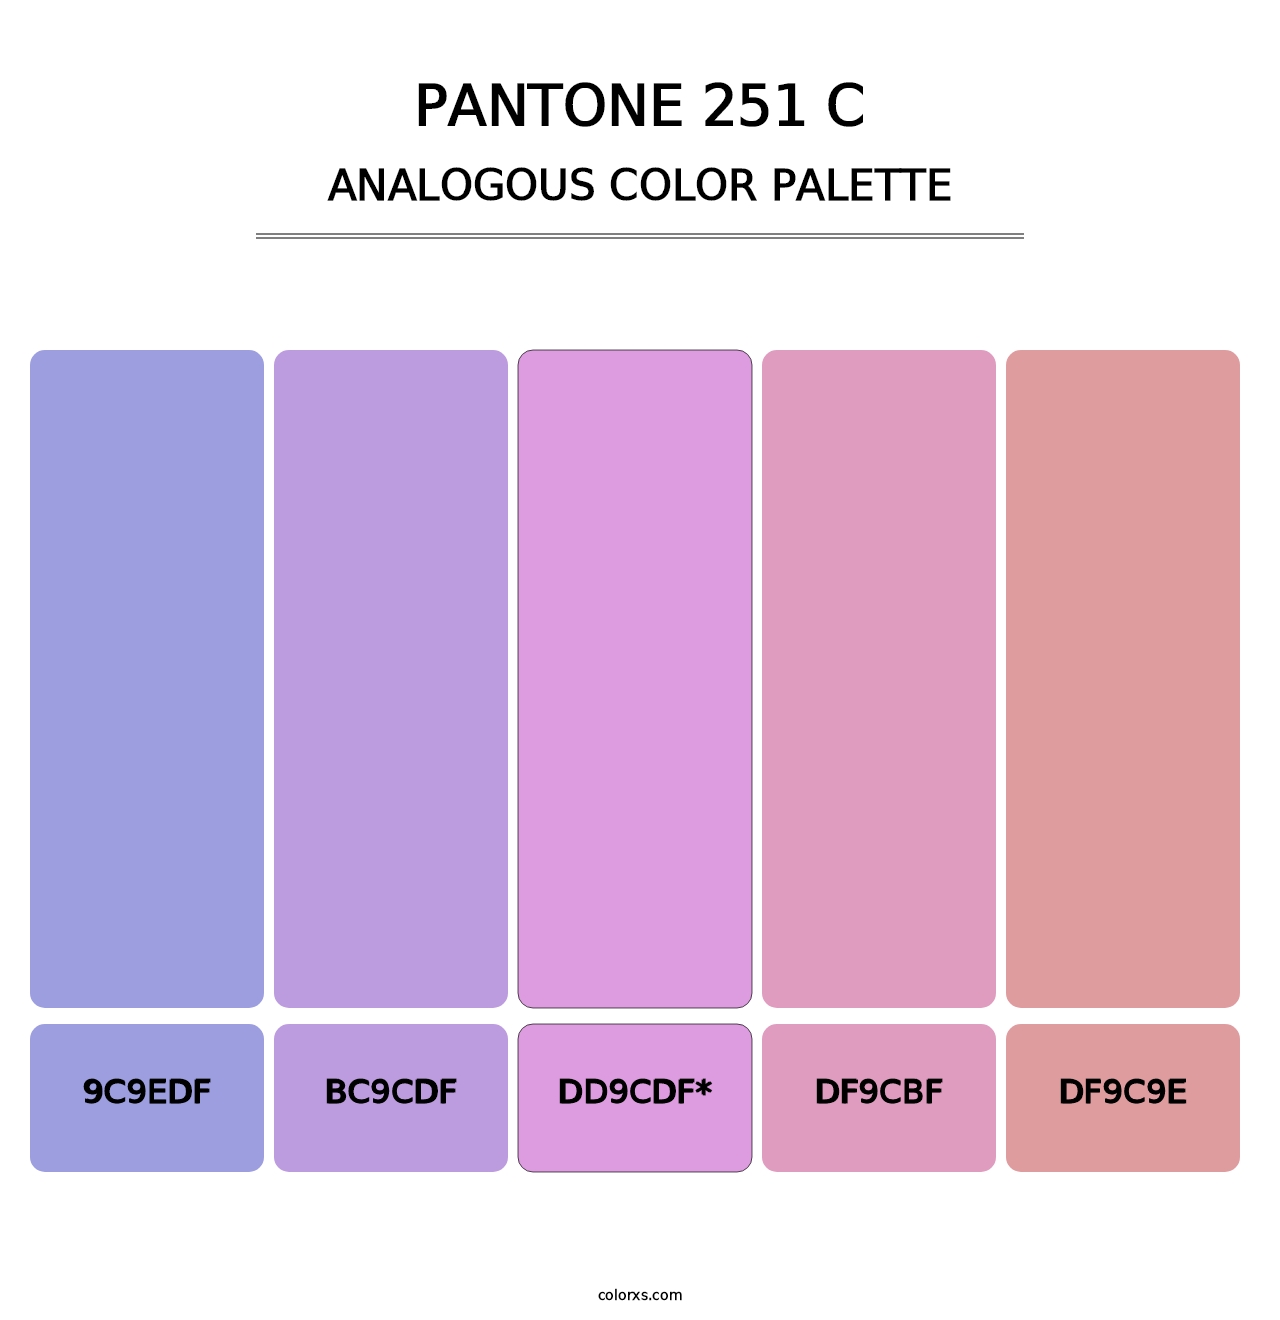 PANTONE 251 C - Analogous Color Palette